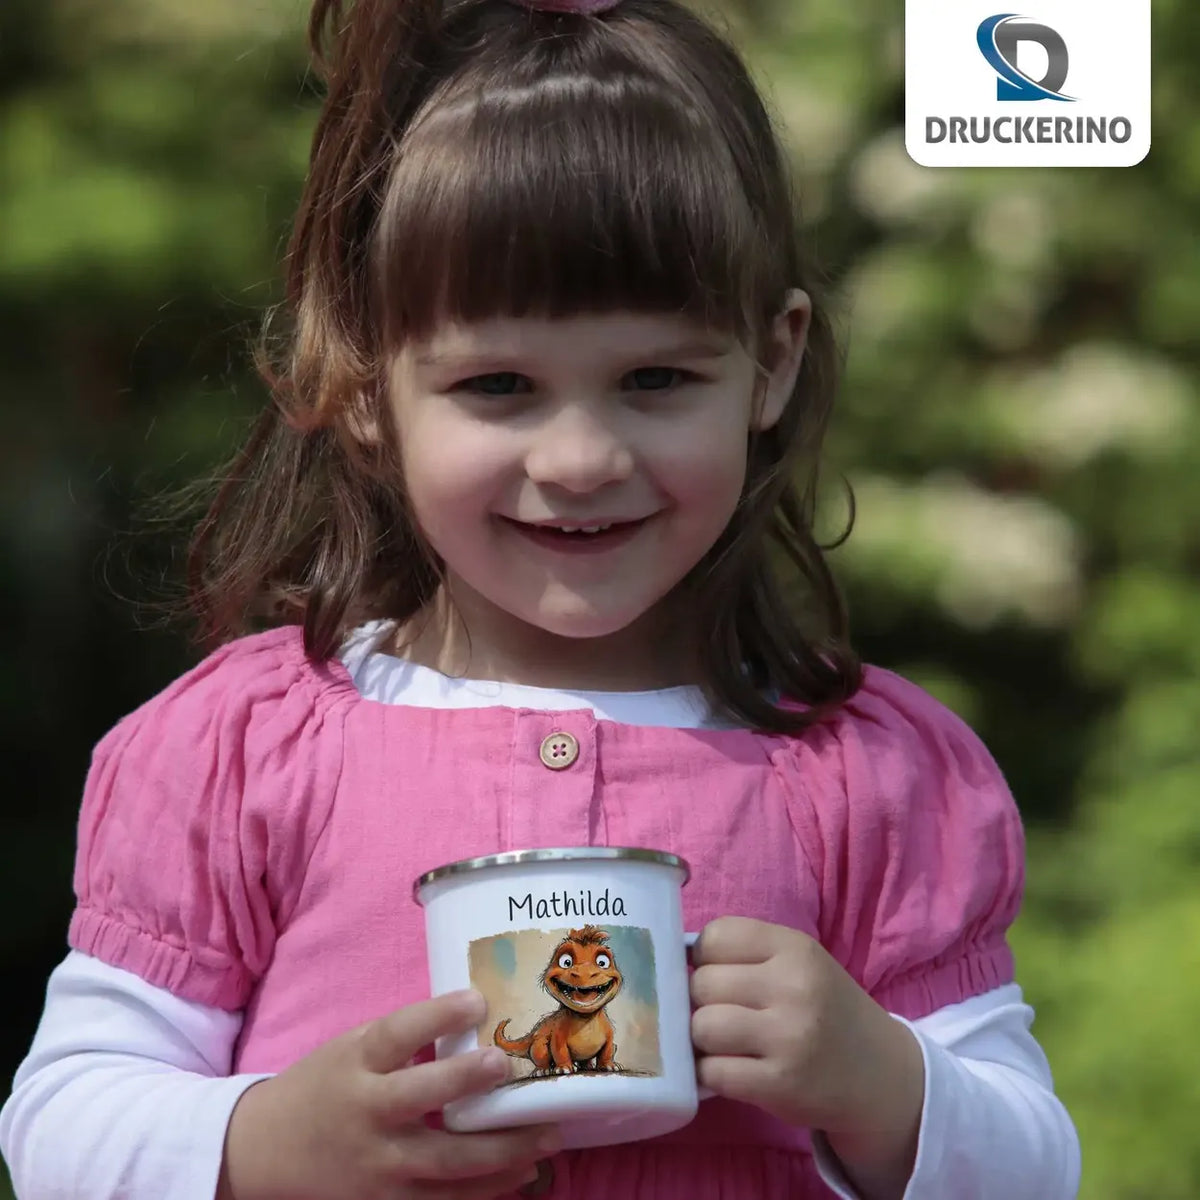 Freundlicher Drachenfreund Emaille Tasse für Kinder personalisiert Emailletasse Druckerino   